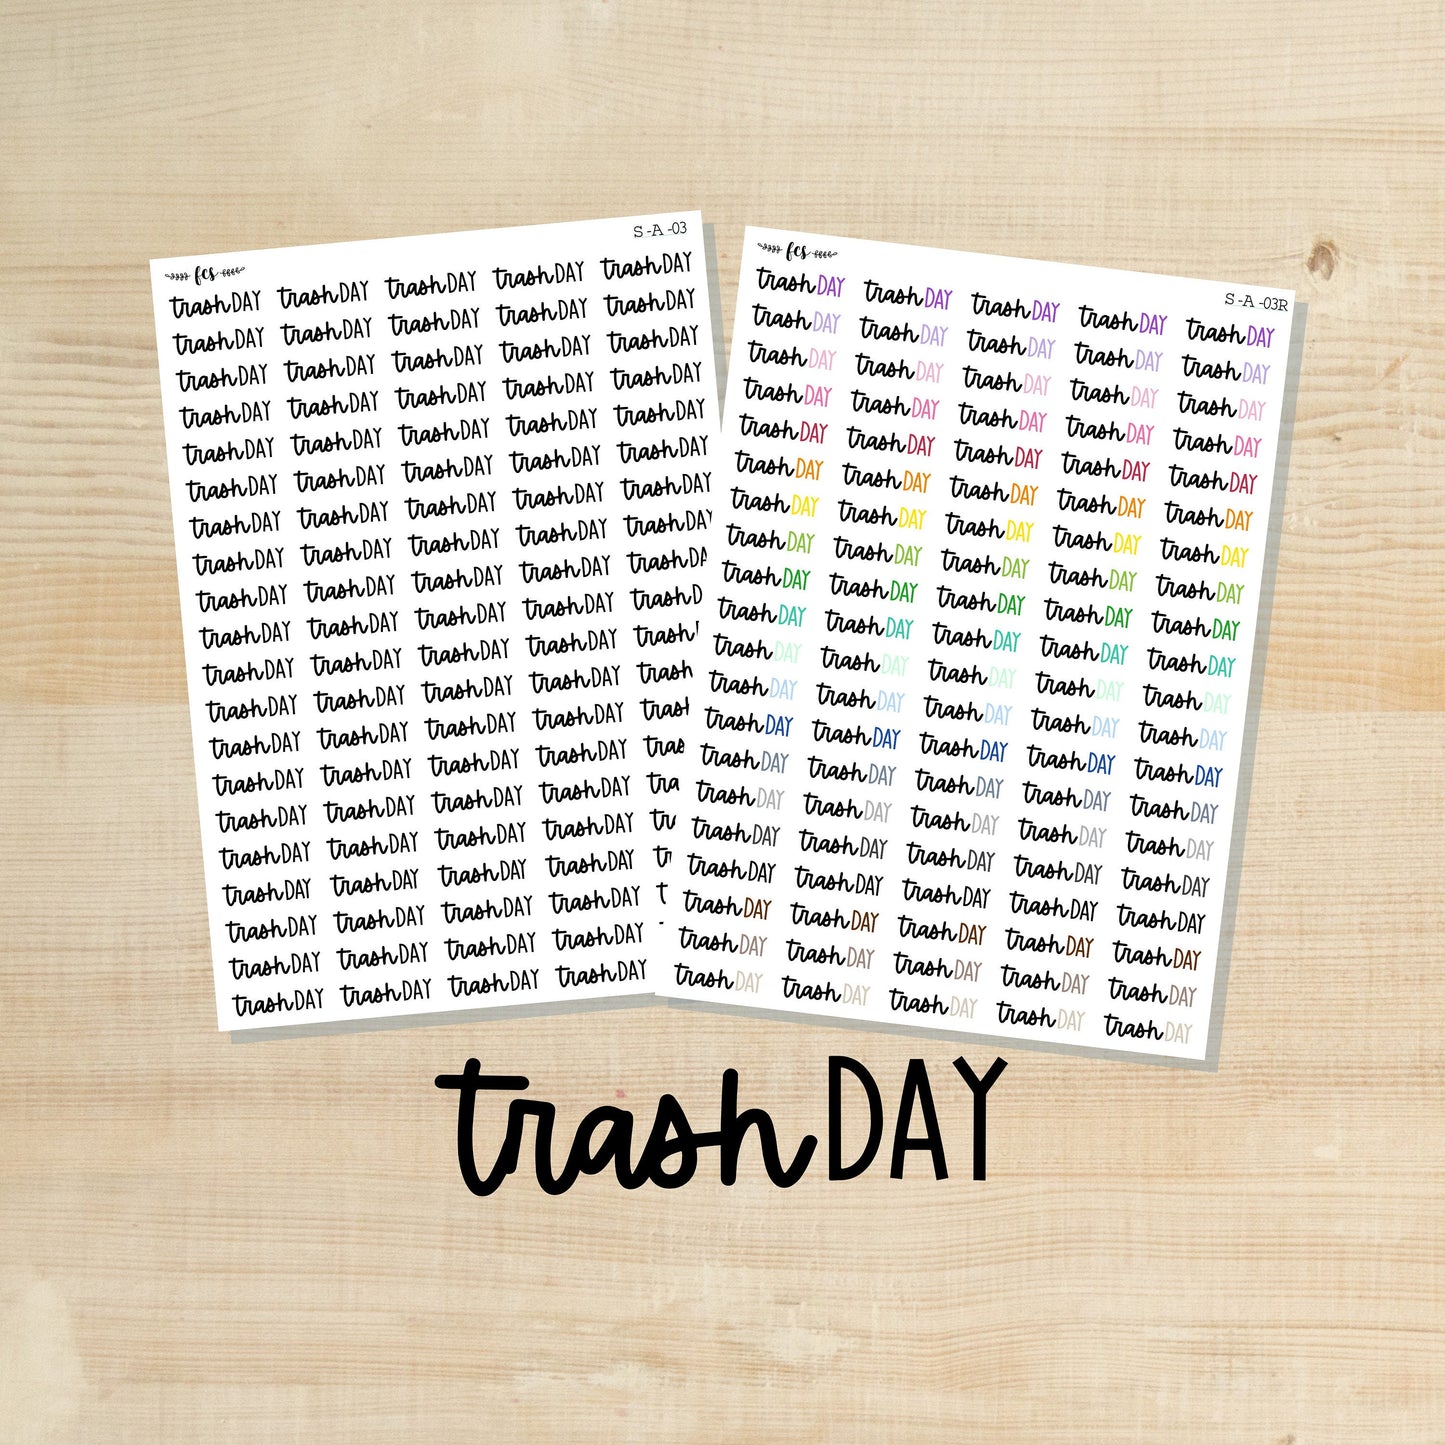 S-A-03 || TRASH DAY script stickers